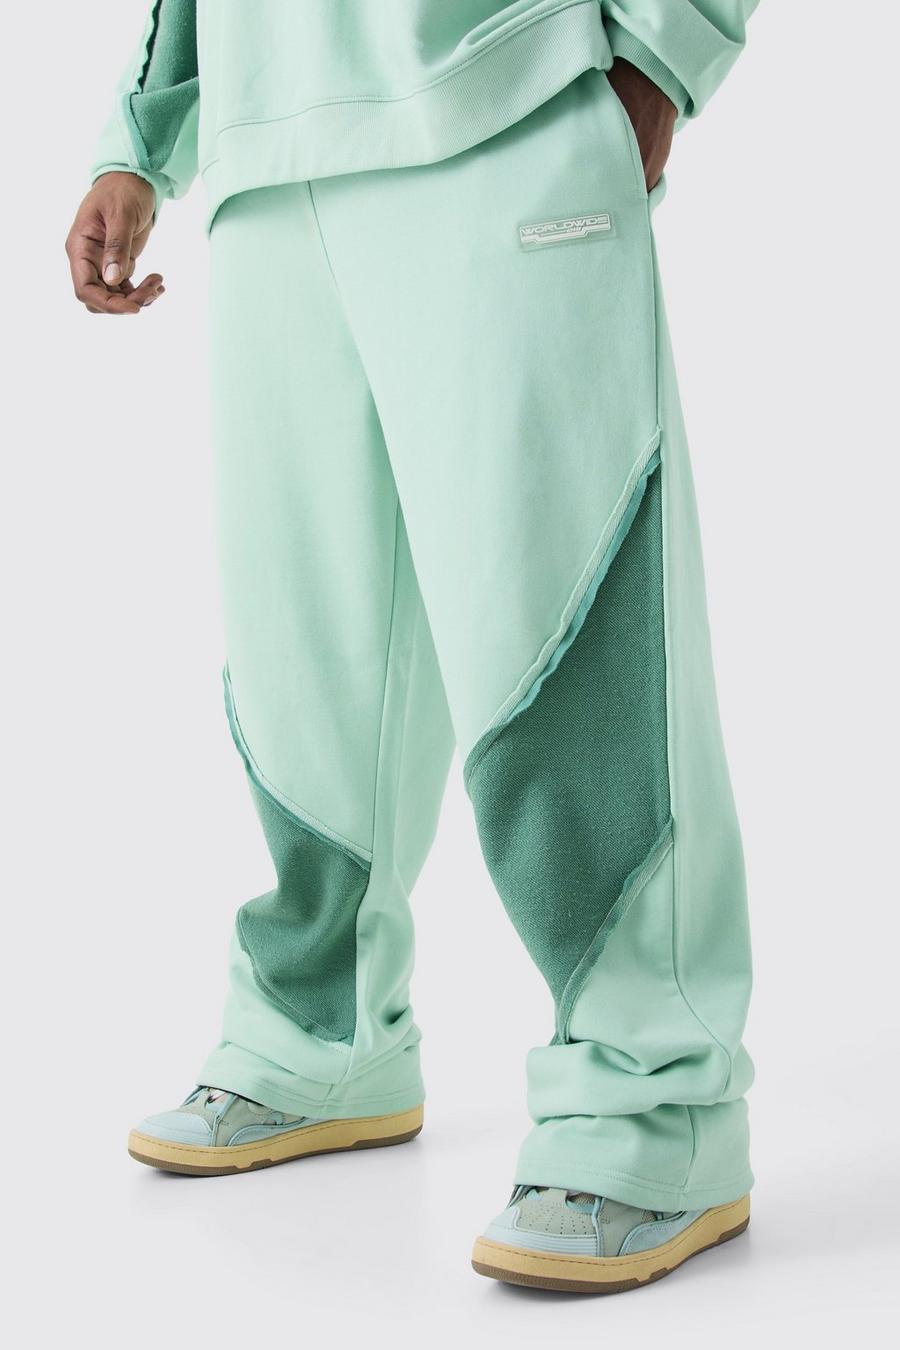 Pantaloni tuta Plus Size rilassati con pannelli arricciati sul retro e fondo grezzo, Mint